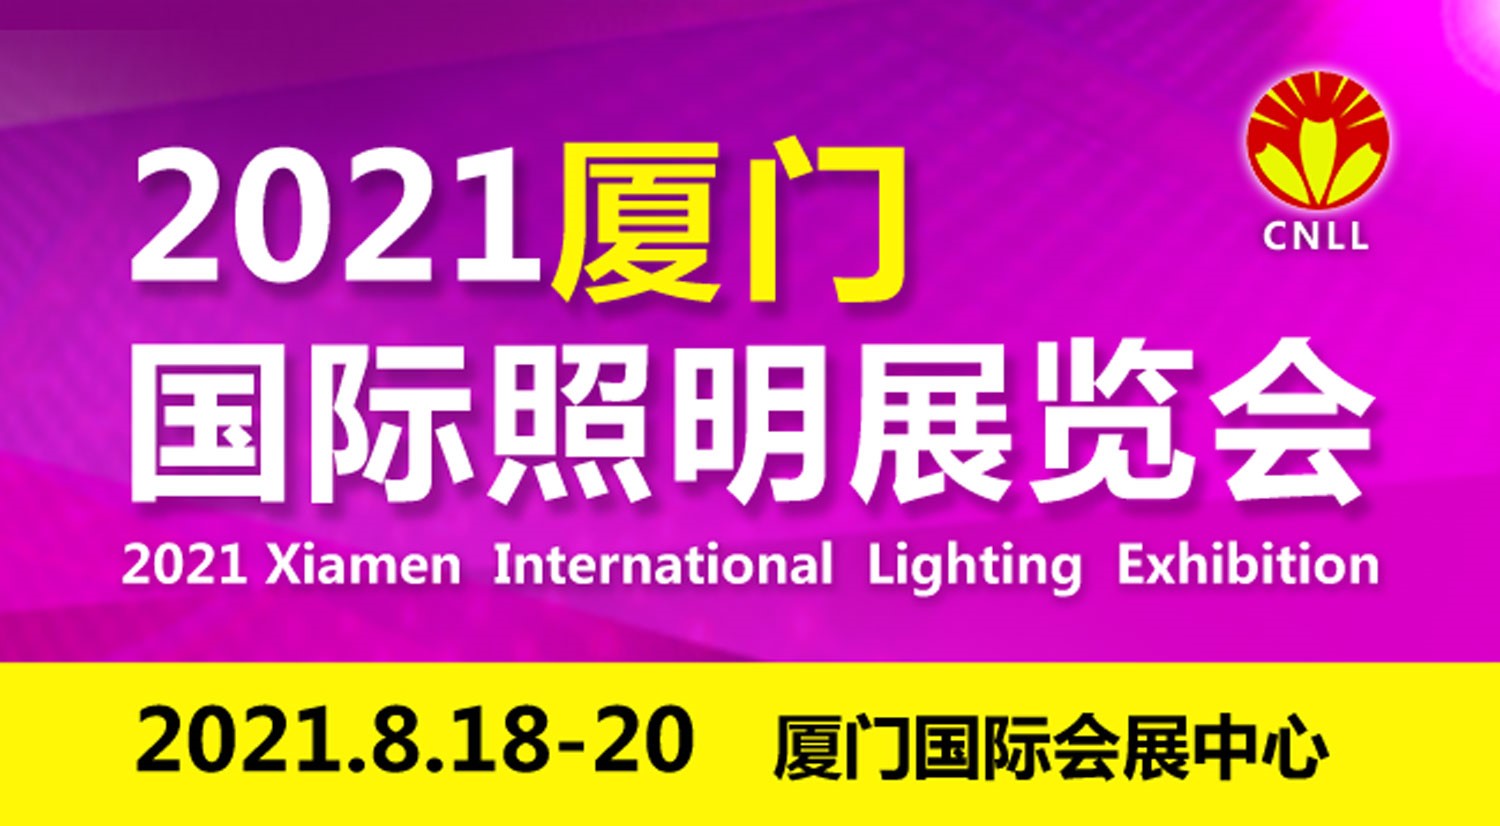 关于2021八月厦门国际照明展览会的参展通知